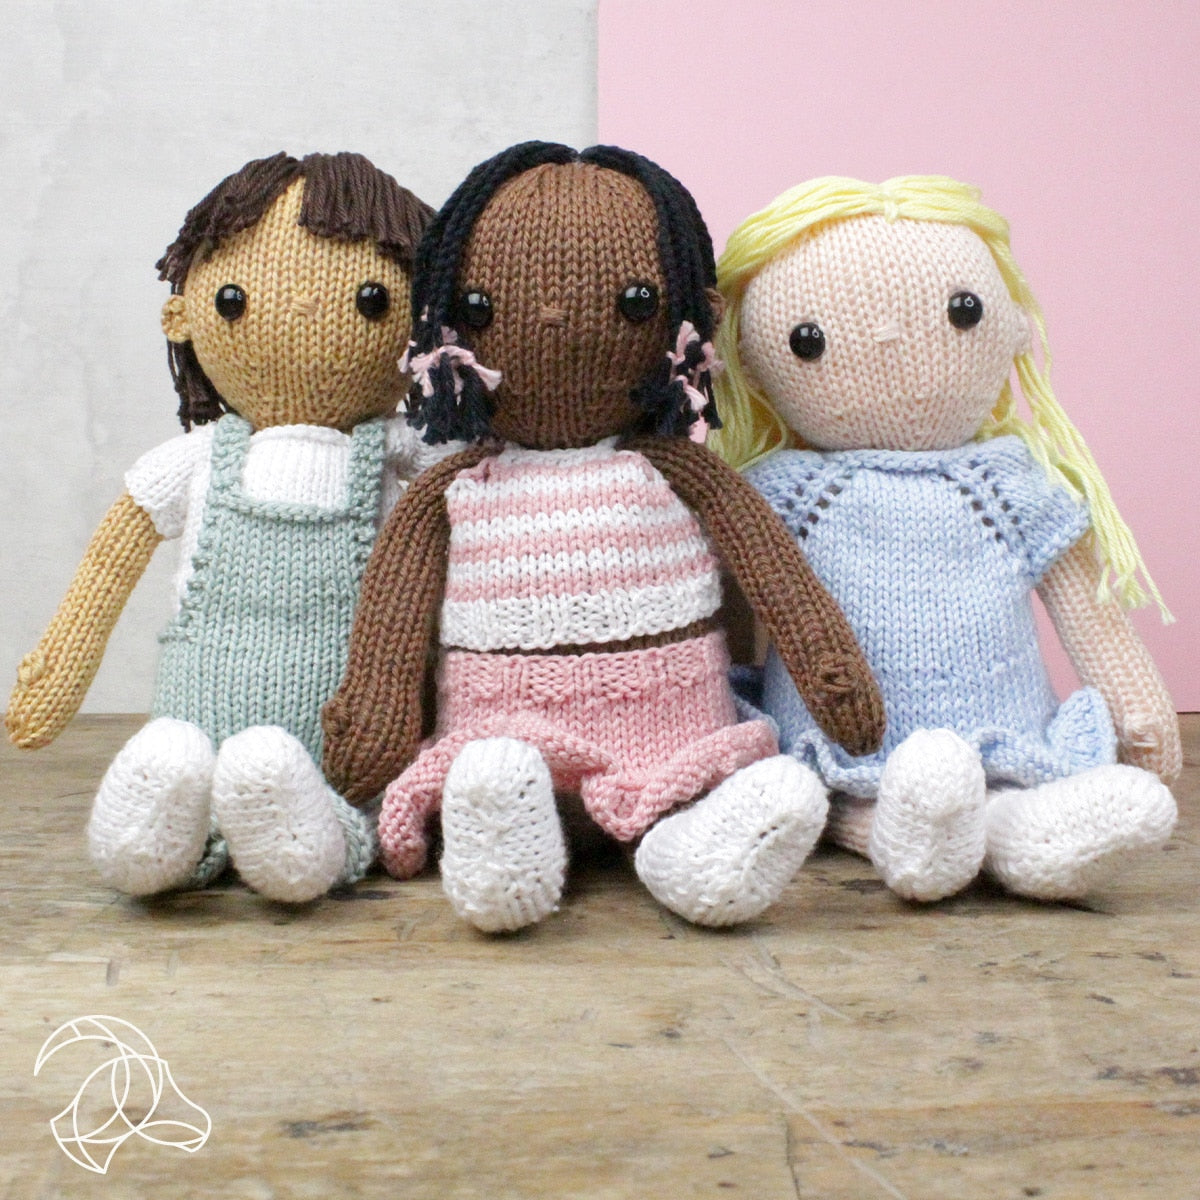 Little Blond Girl Doll Knitting Kit - by Hardicraft